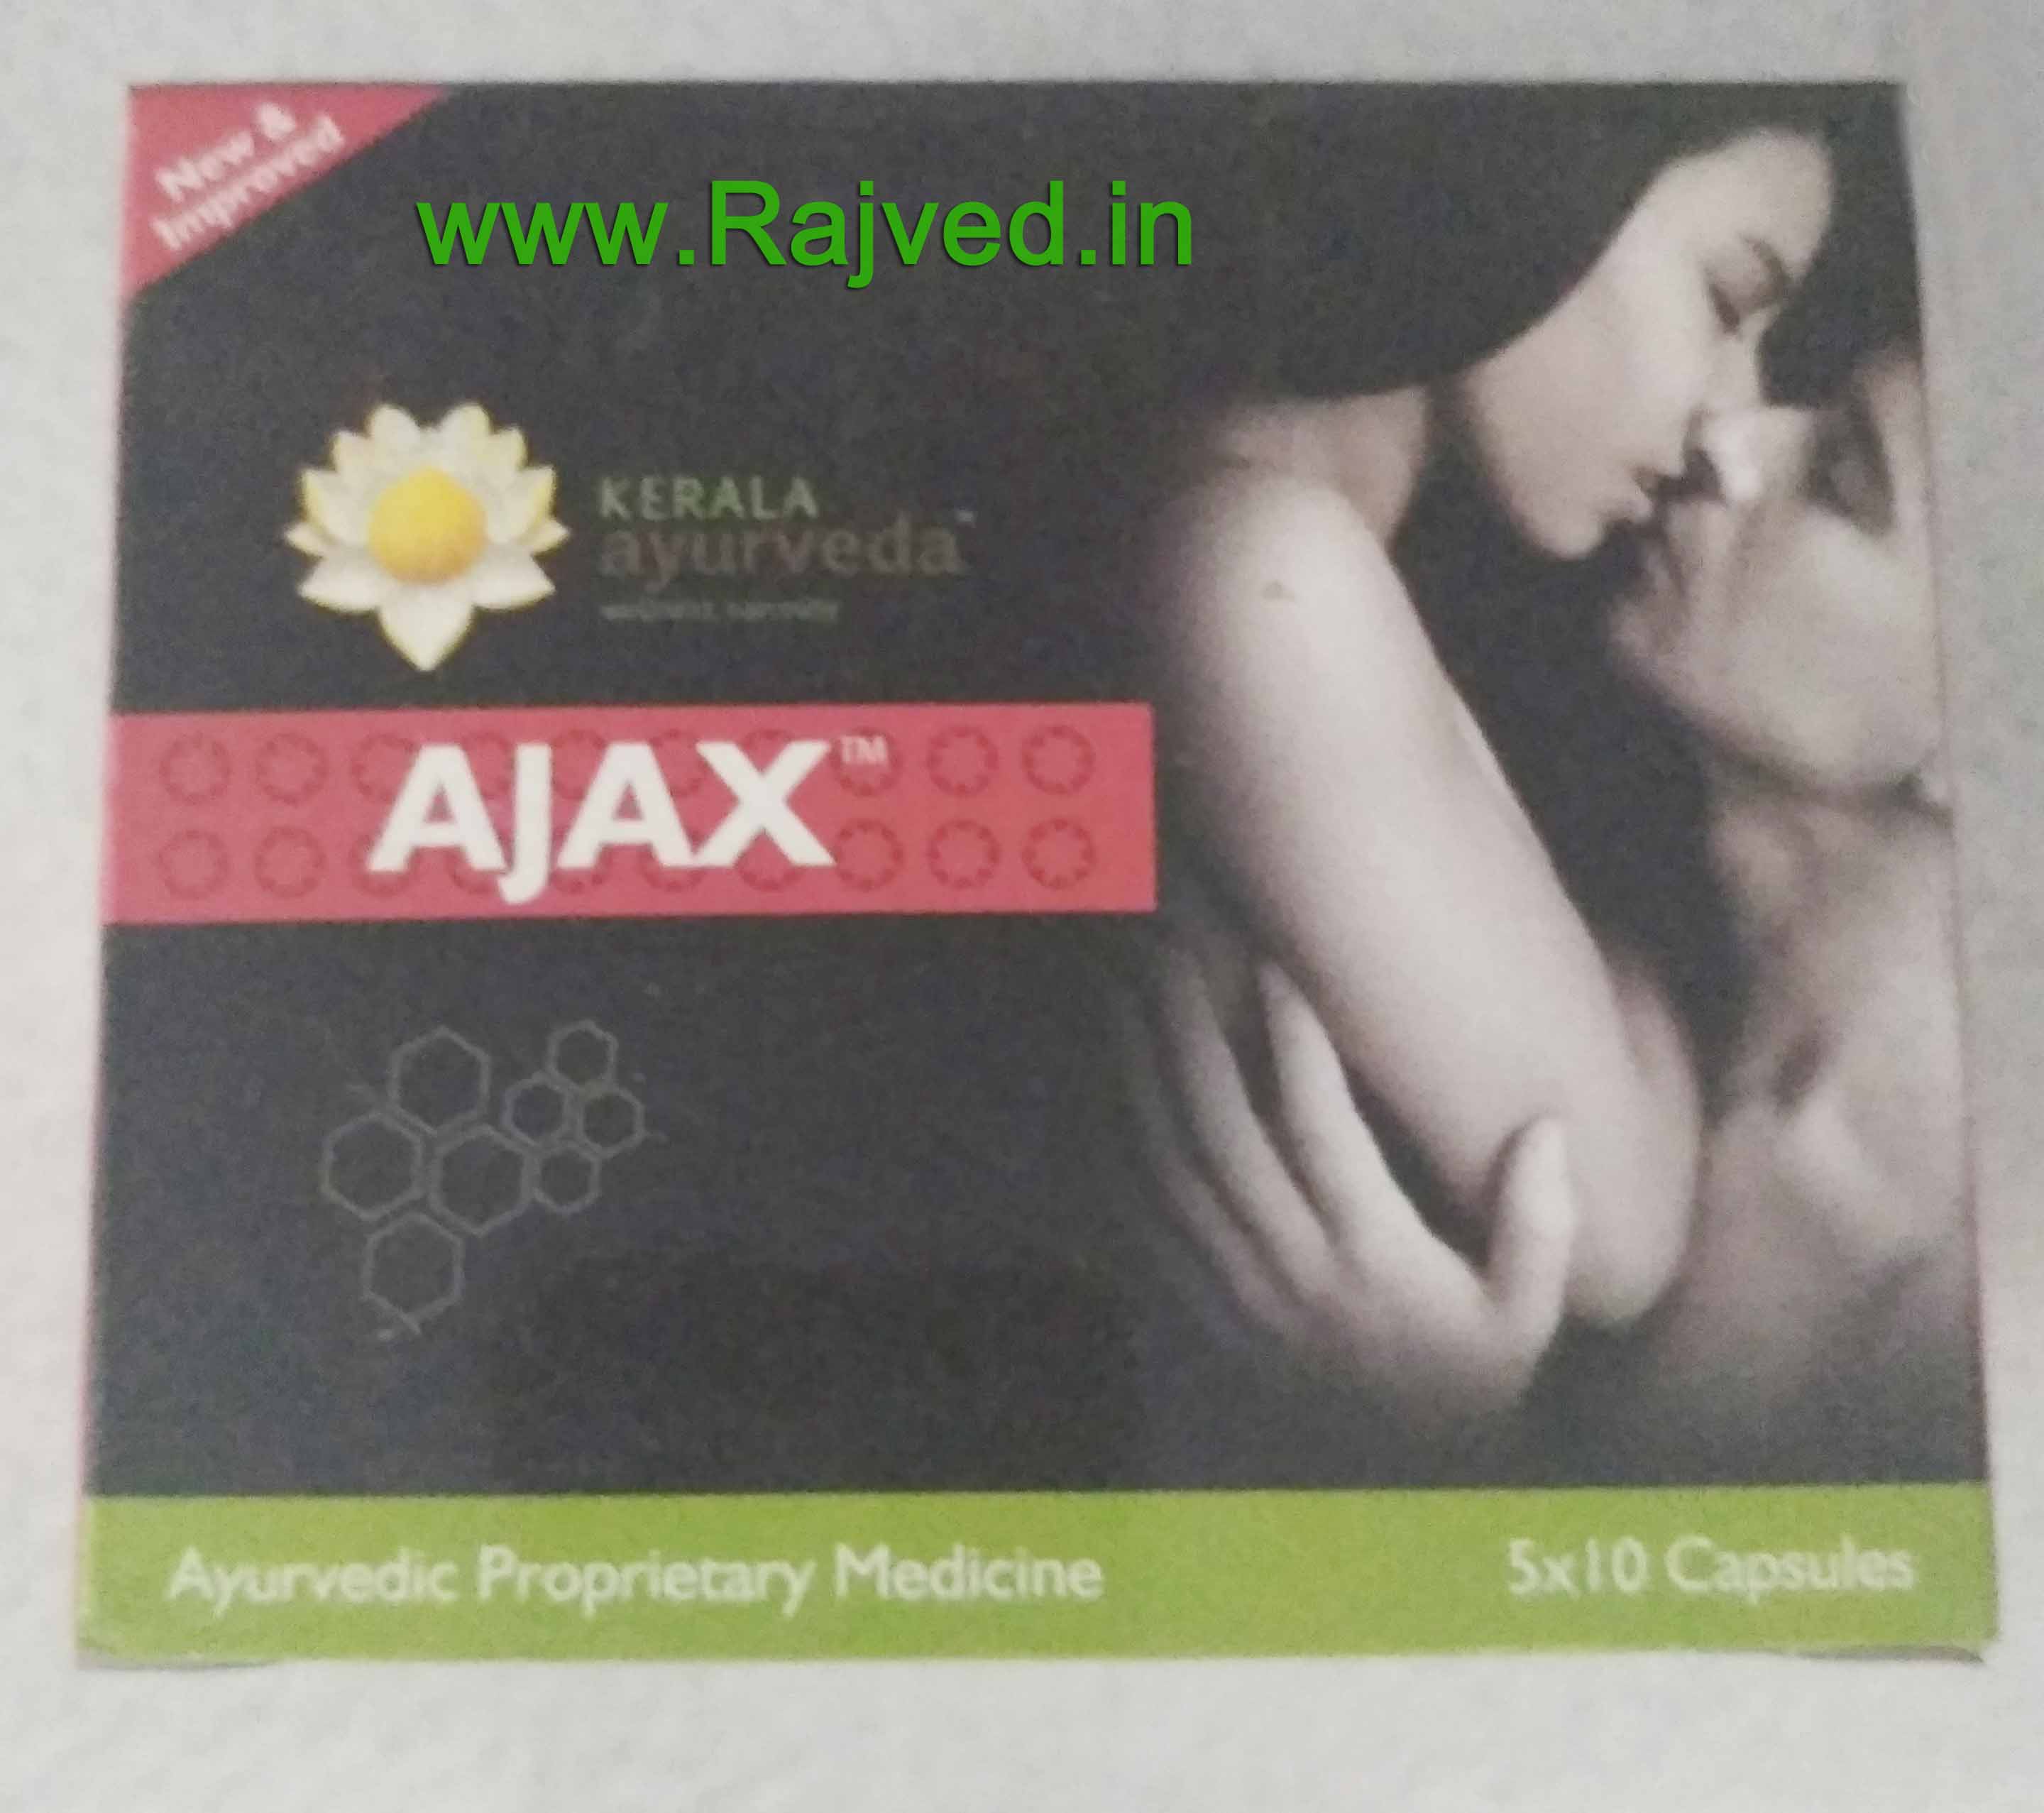 ajax capsule 50 cap upto 20% off Kerala Ayurved Ltd